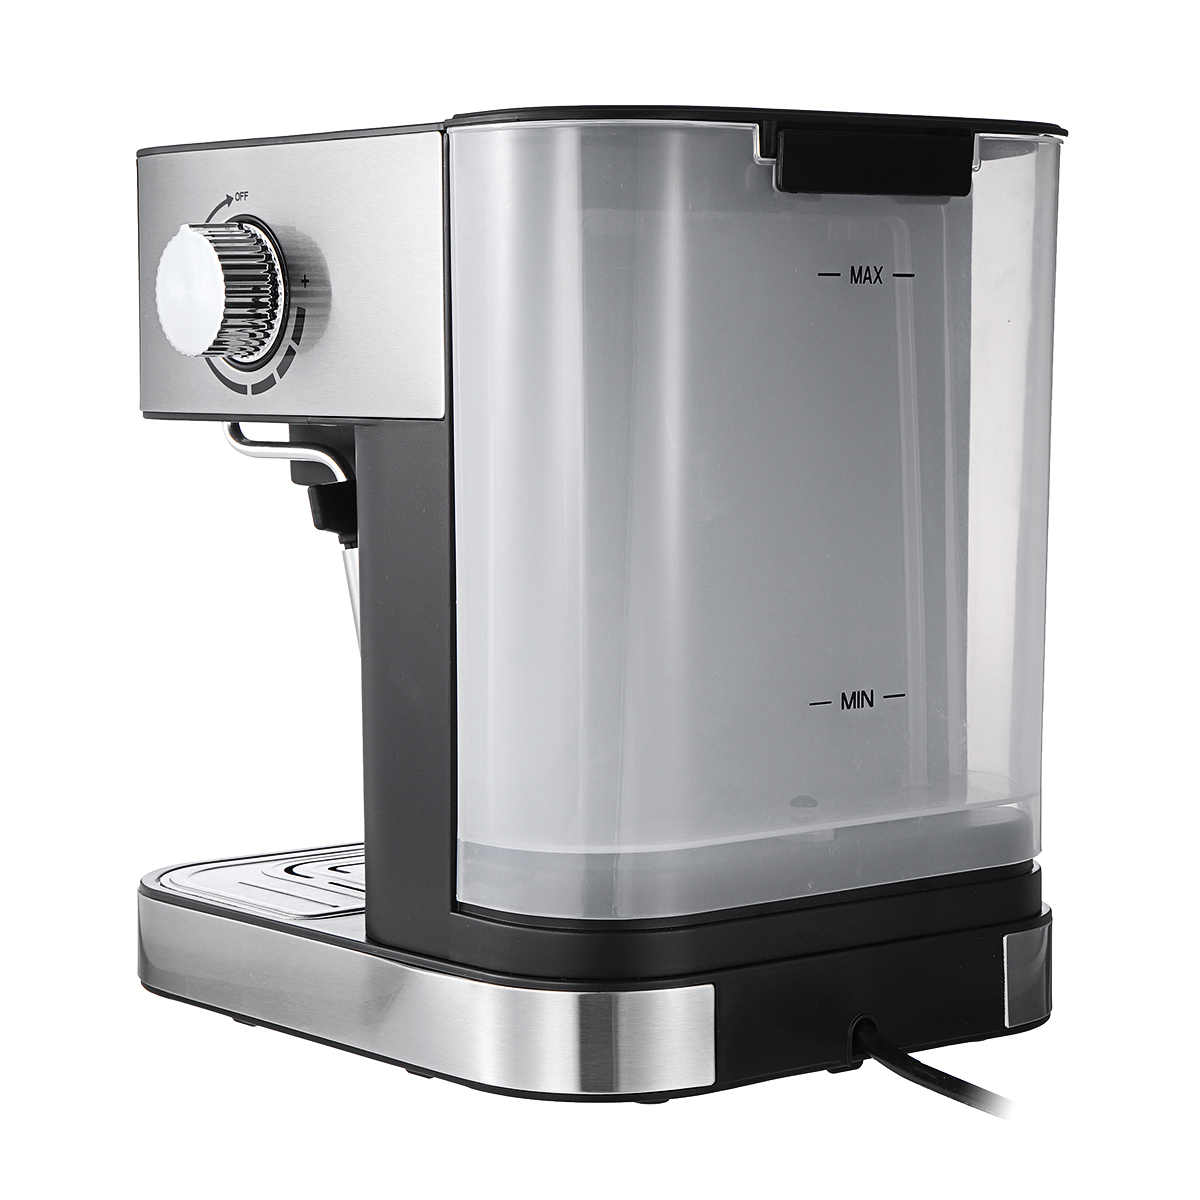 FXUNSHI MD-2009 1.4L 950W Semiautomatic Espresso Milk Bubble Maker Italian Coffee Machine (BS) 11